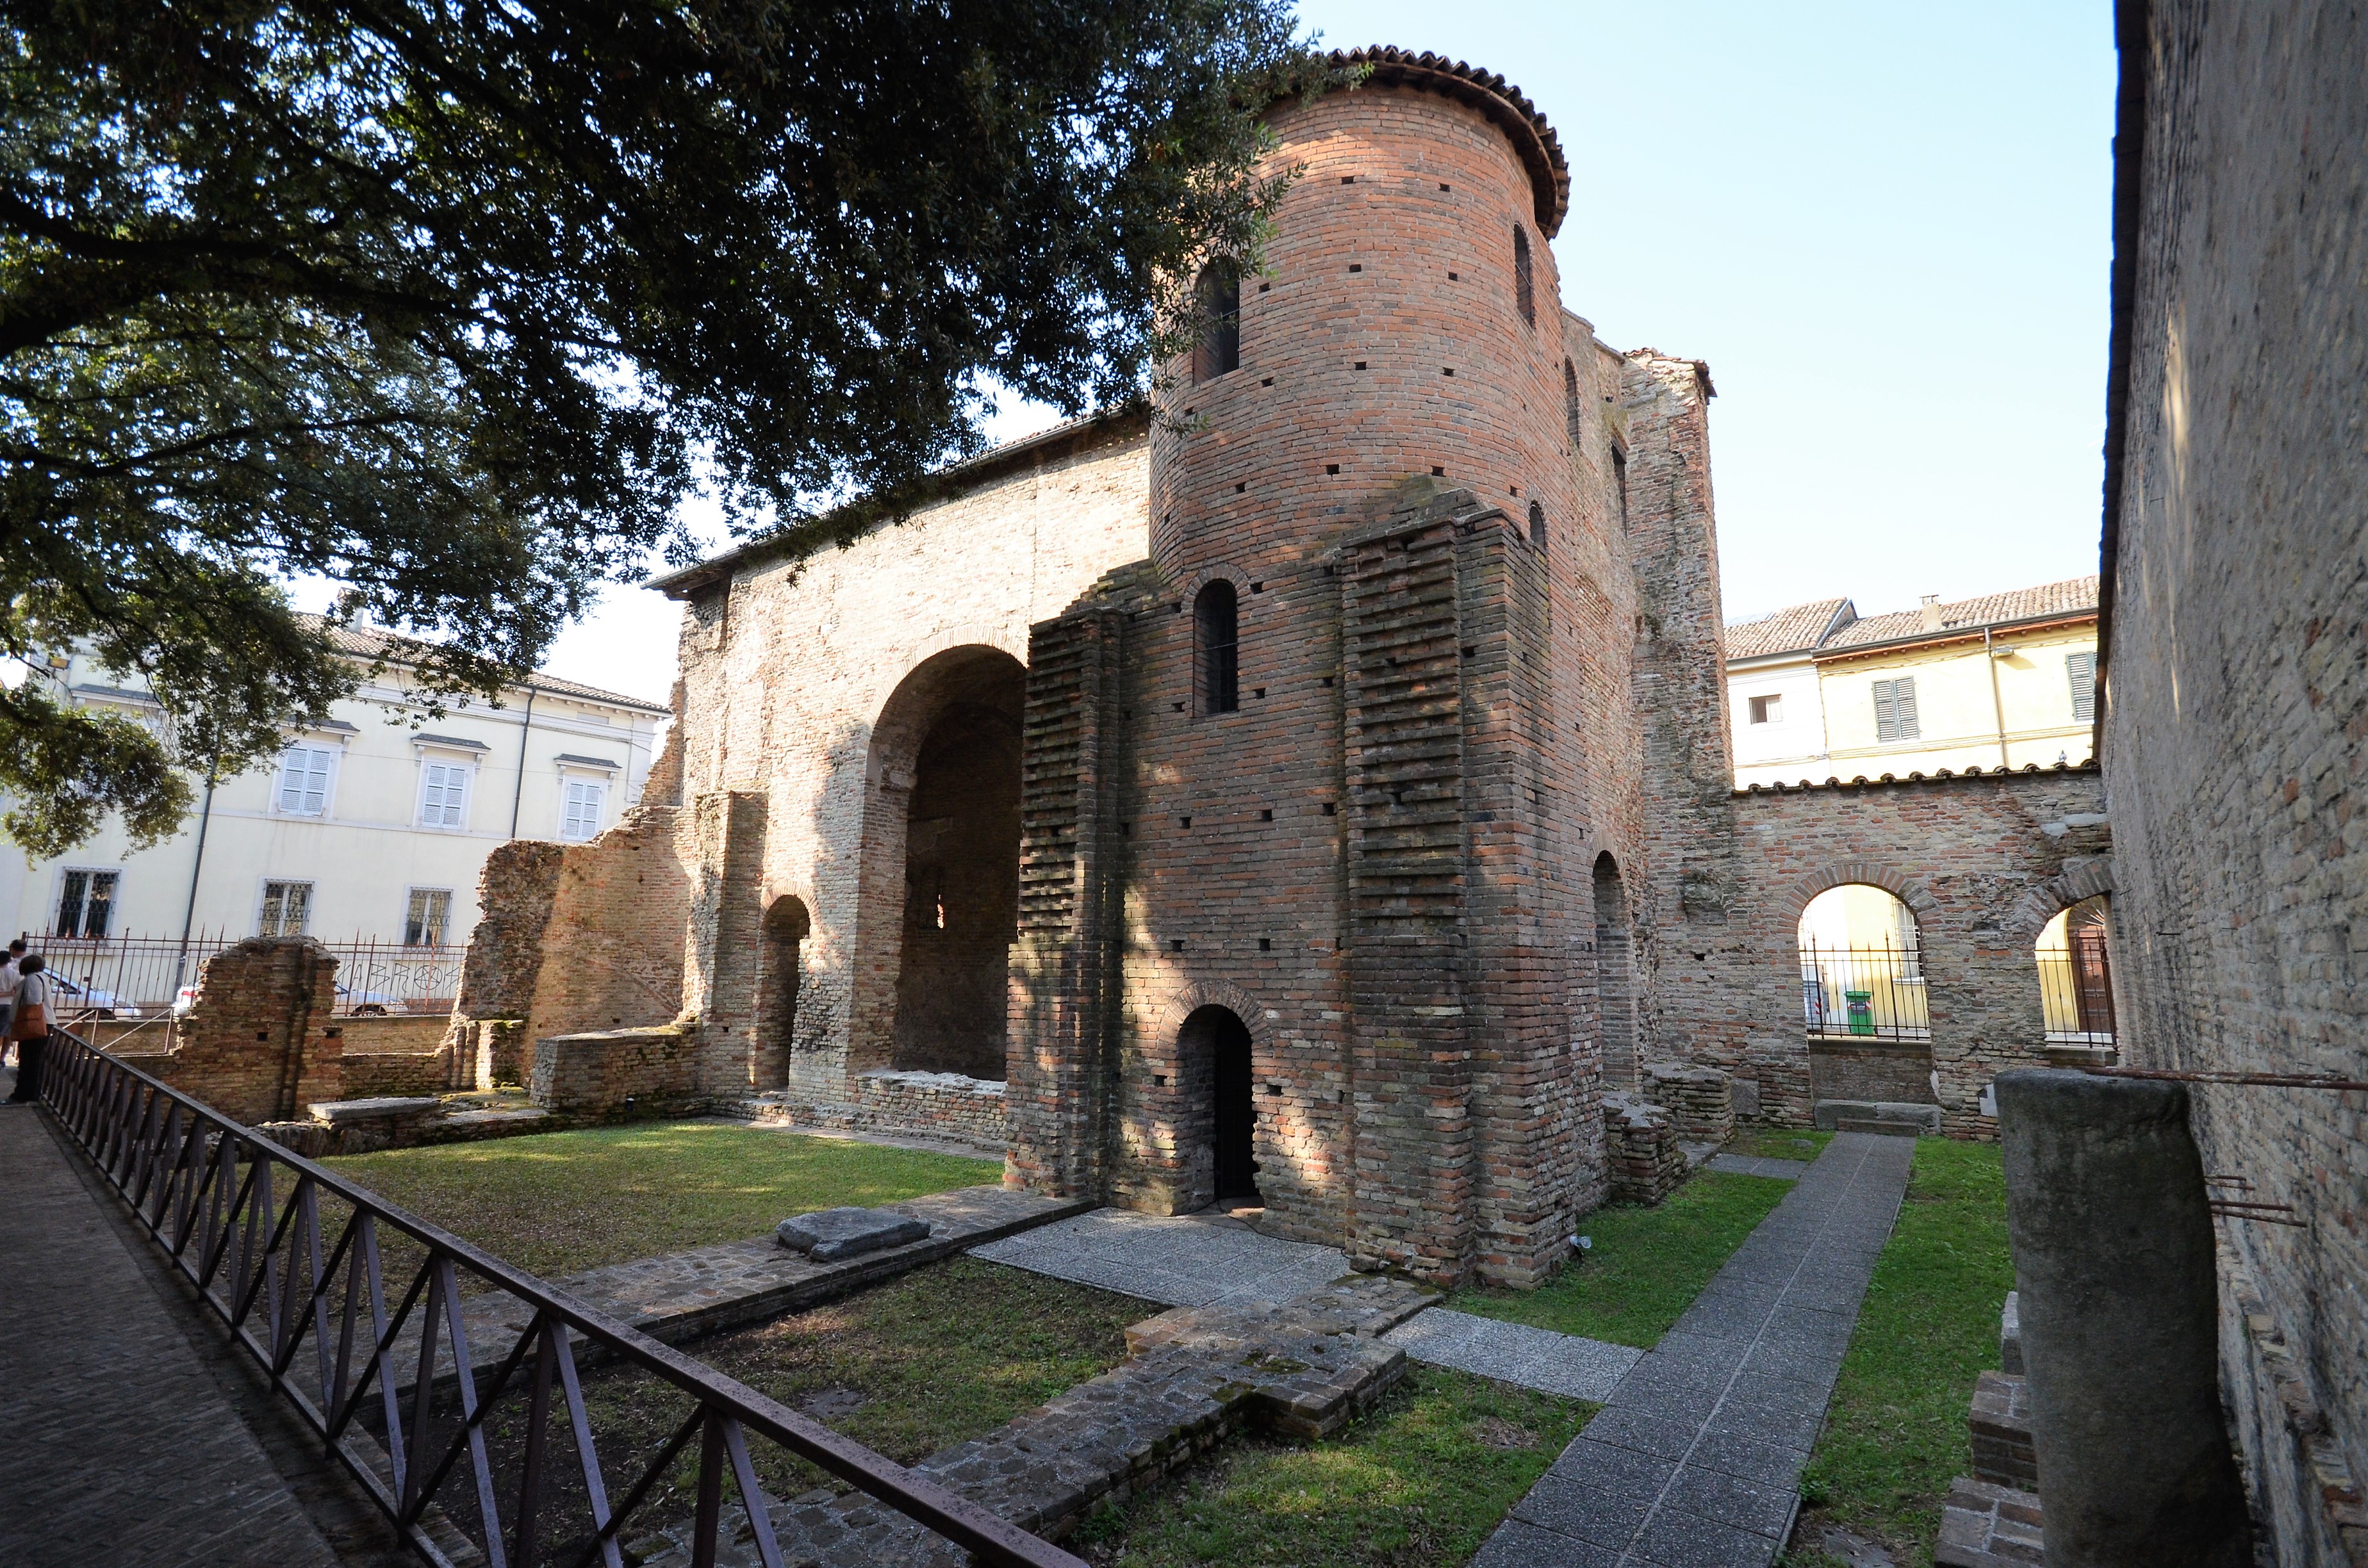 foto: https://upload.wikimedia.org/wikipedia/commons/3/35/Palazzo_di_Teodorico-cortile.jpg